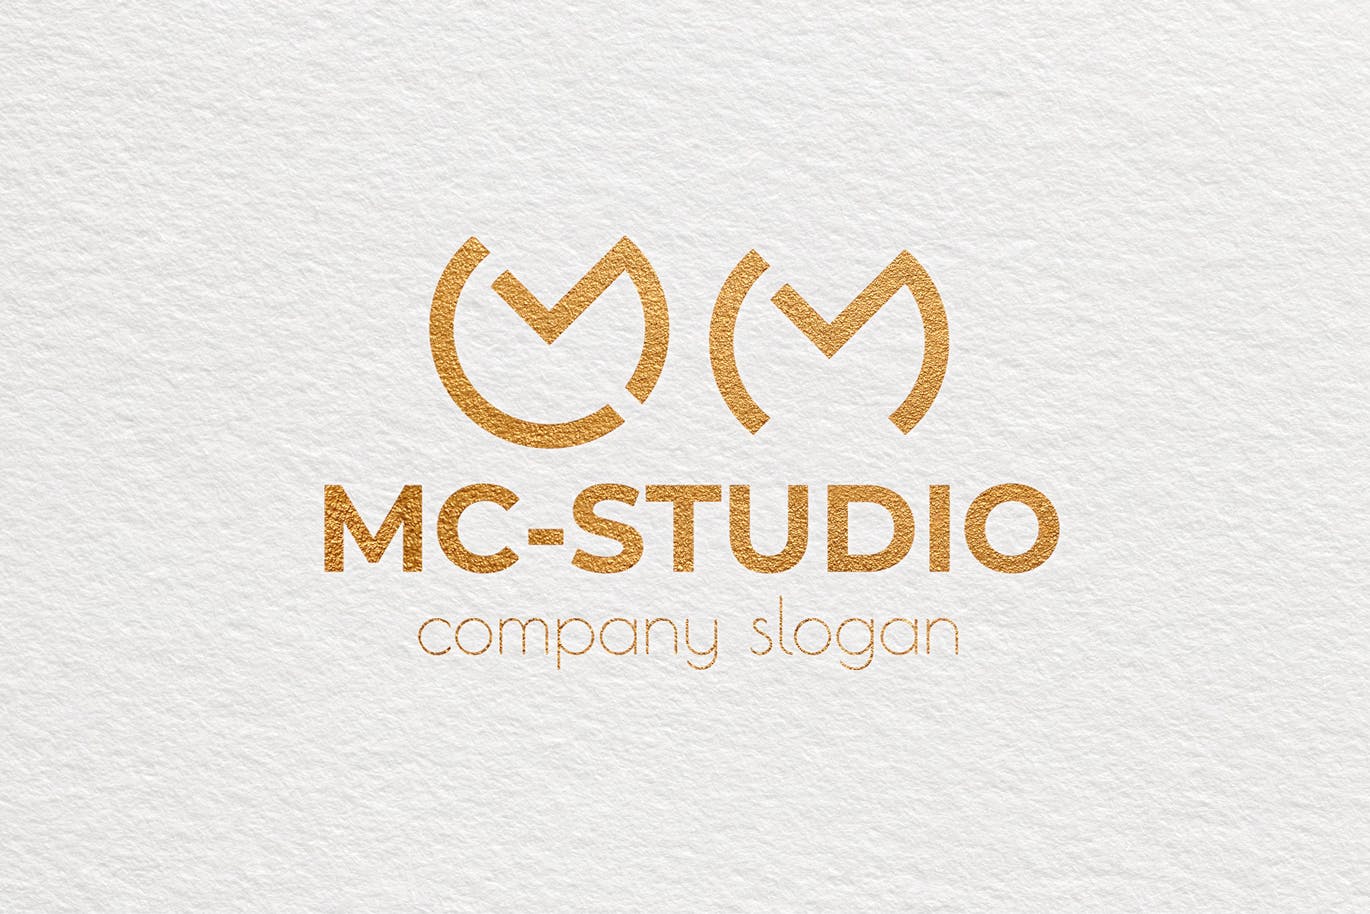 创意工作室图形Logo设计蚂蚁素材精选模板 Mc Studio Creative Logo Template插图(3)